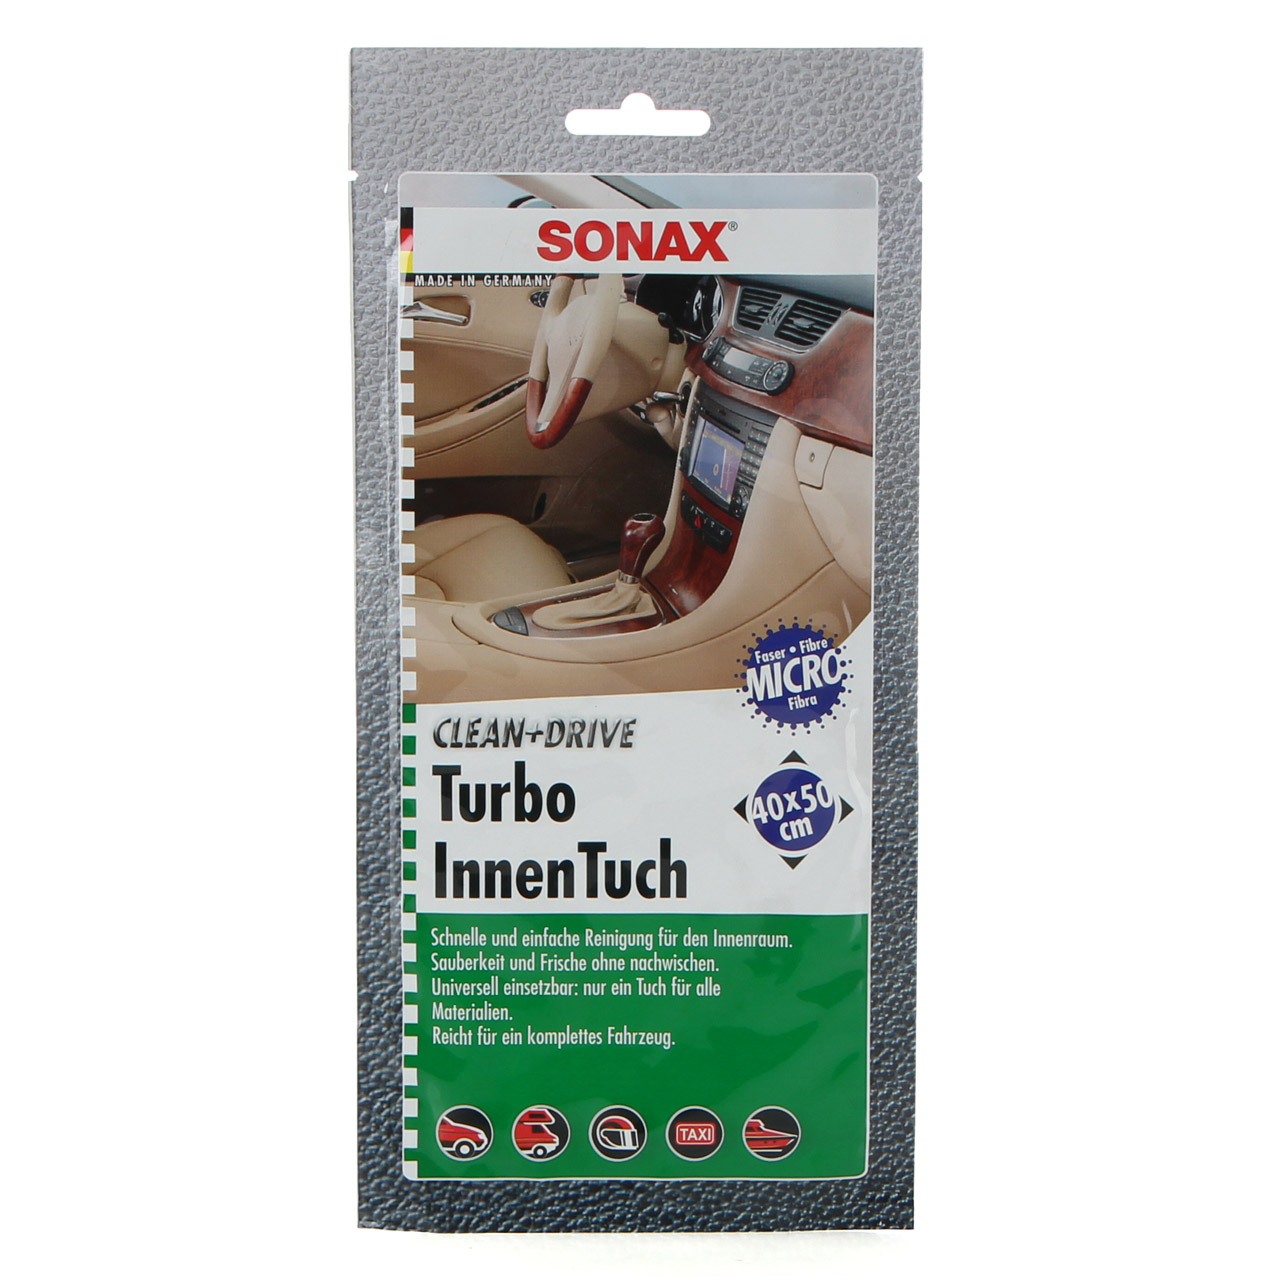 SONAX 413000 Turbo InnenTuch CLEAN&DRIVE Microfaser-Tuch 40x50cm